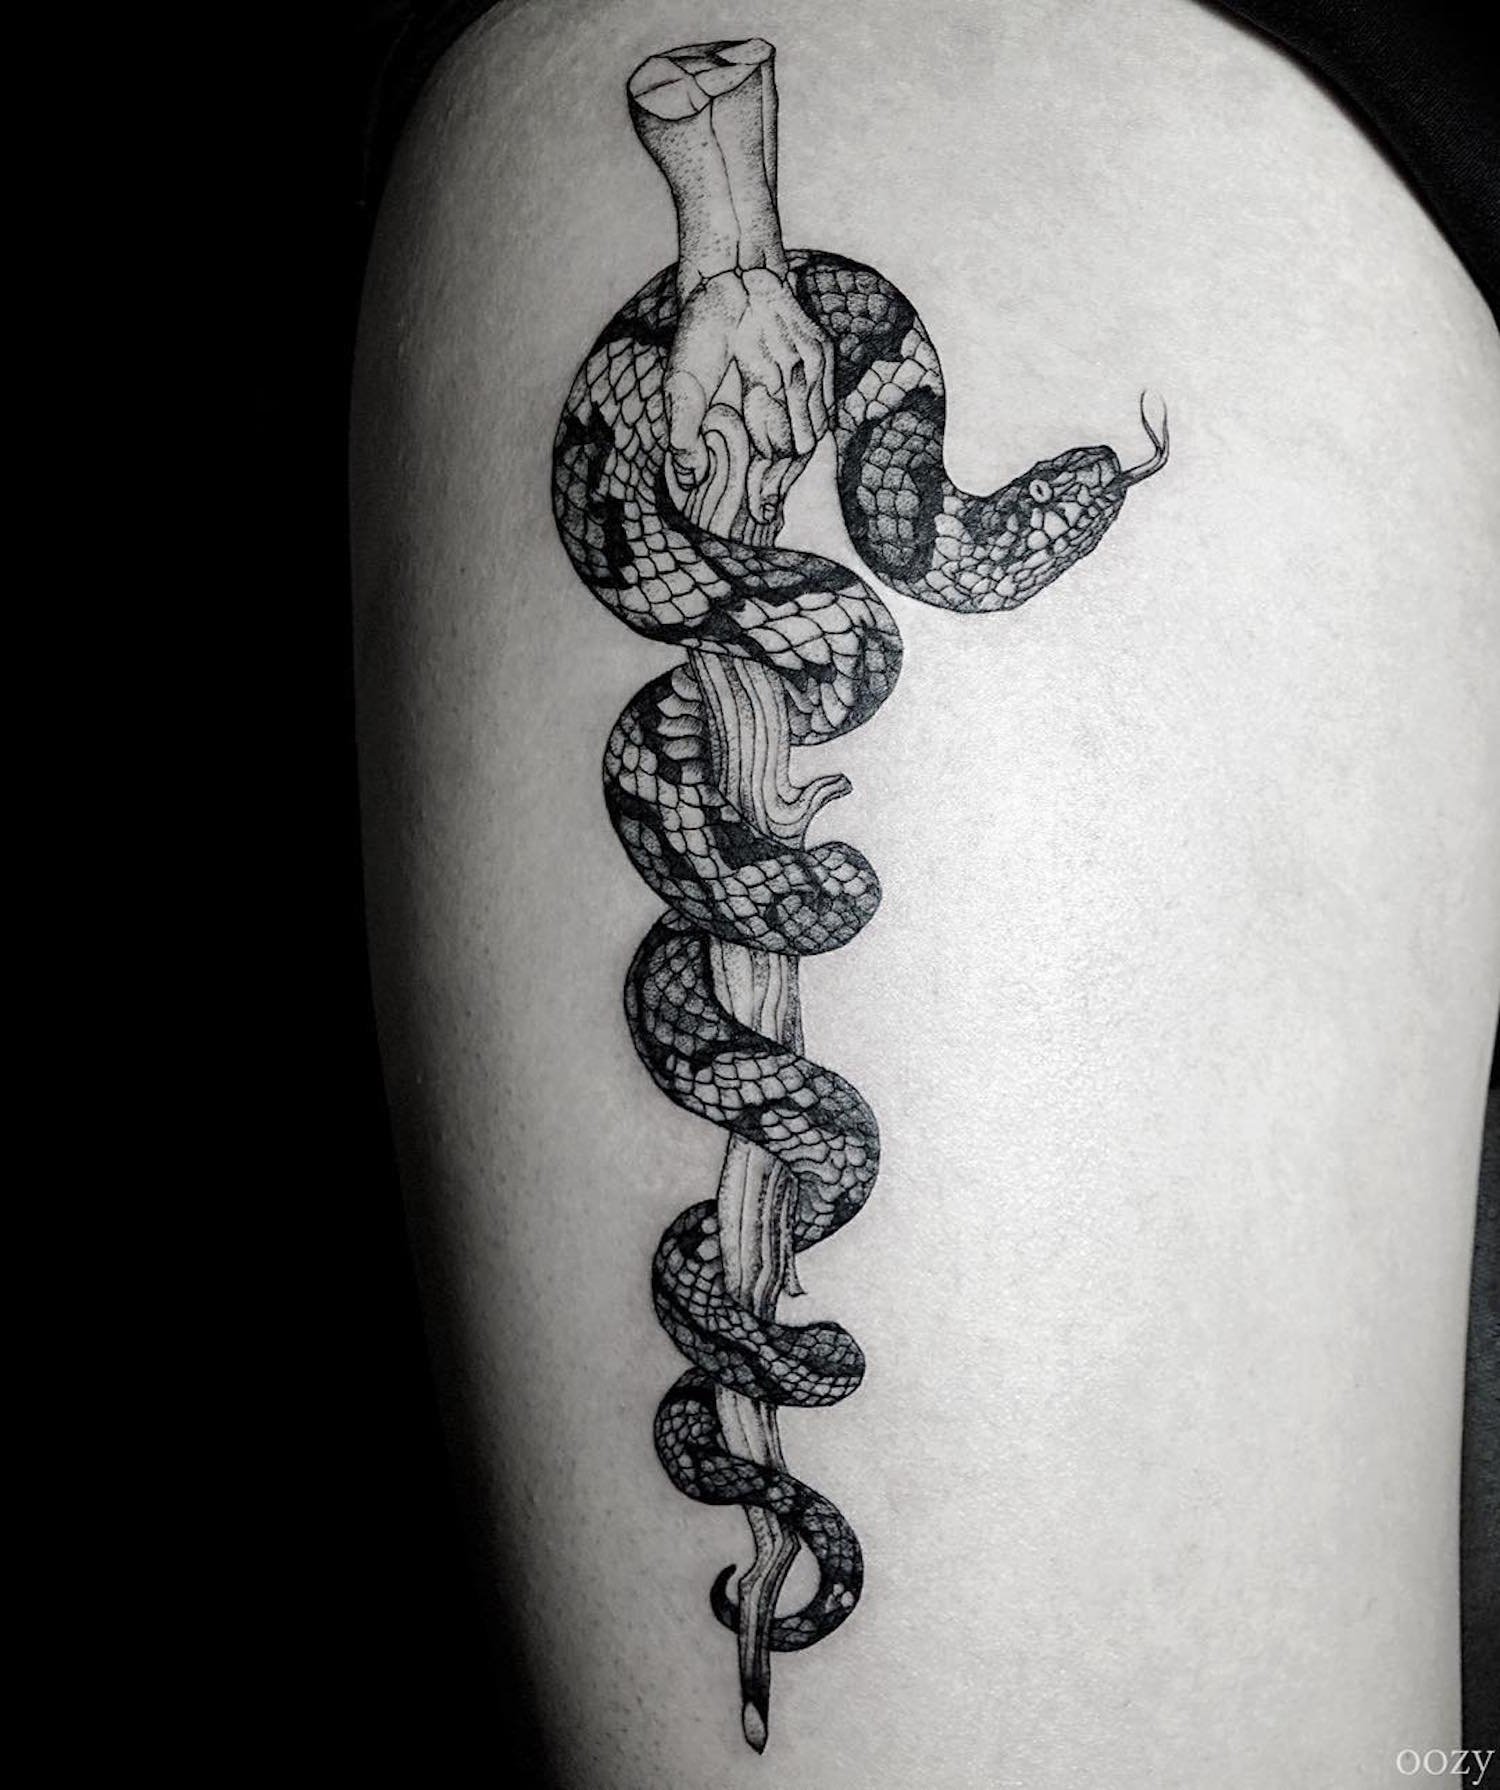 Татуировка змеи обвивающей руку